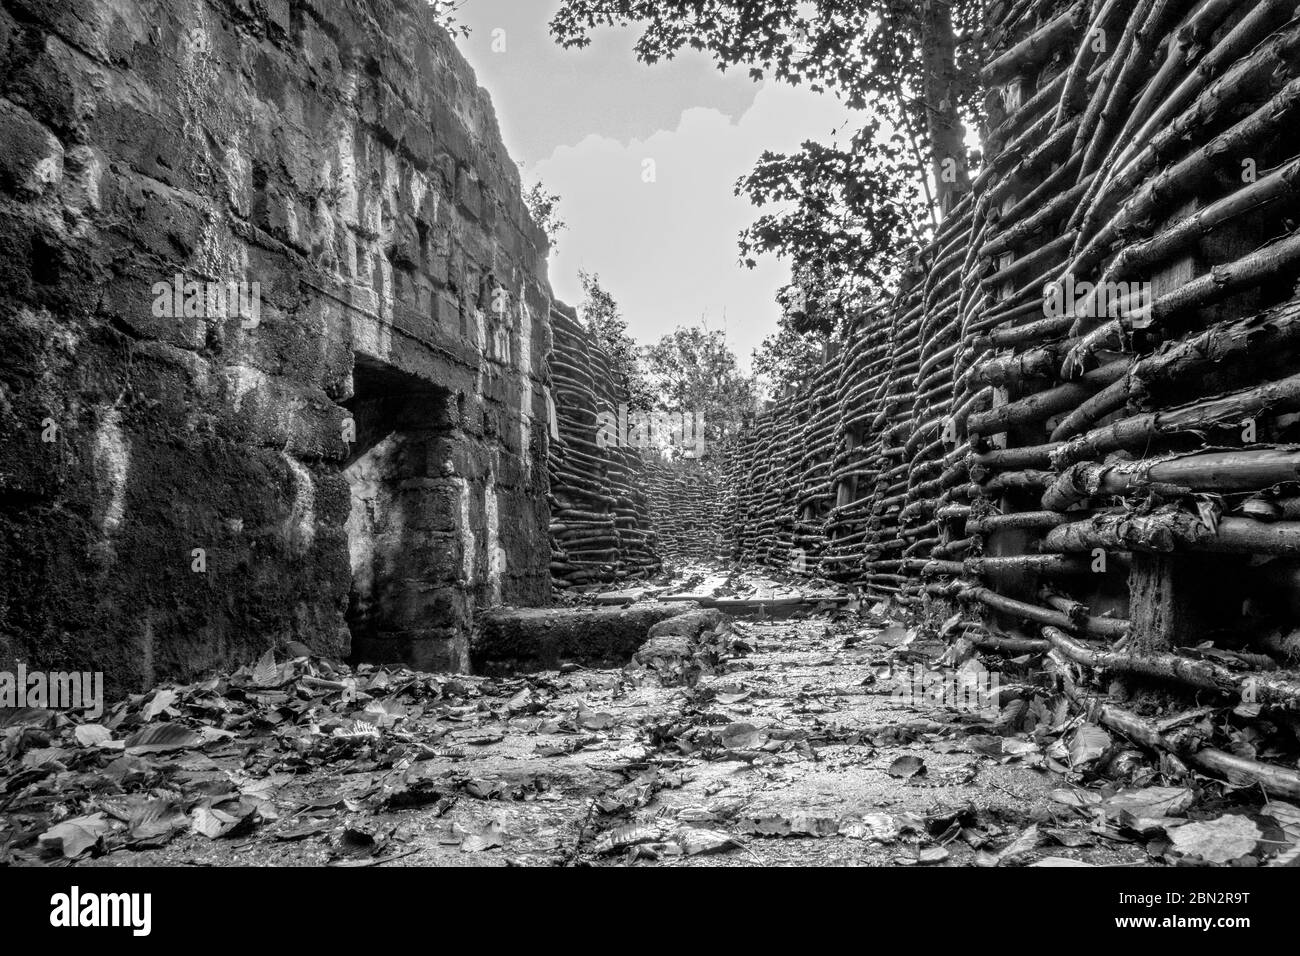 Ein deutsches Wehrgrabensystem und Bunker, die während des 1. Weltkrieges in Bayernwald (Bayern Wood) bei Ypern, Belgien, eingesetzt wurden. Stockfoto